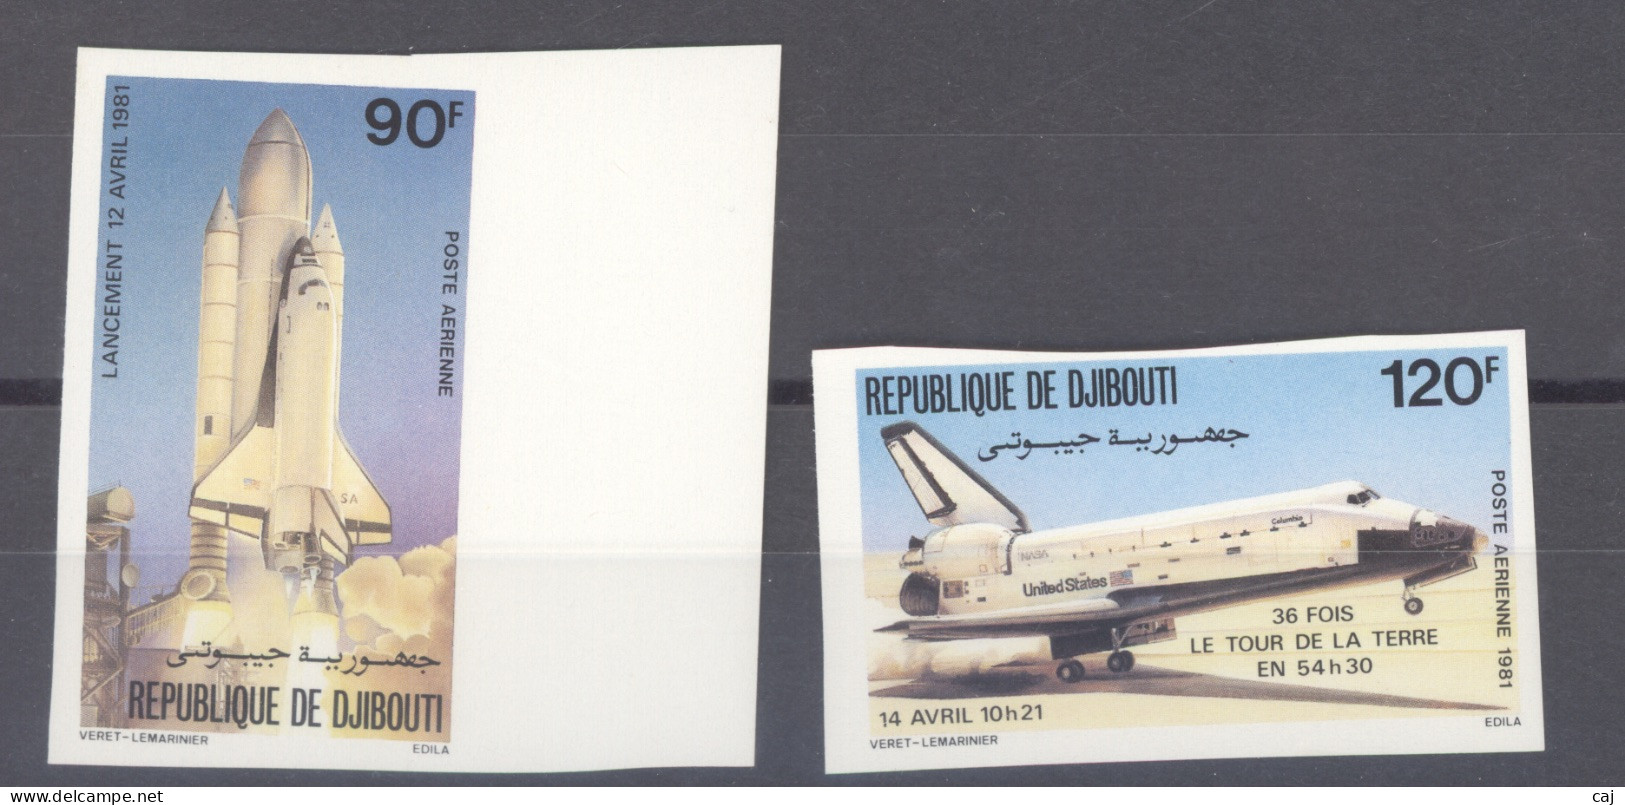 Djibouti  -  Non Dentelés  -  Avion  :  Yv 155-56  **  Espace - Gibuti (1977-...)